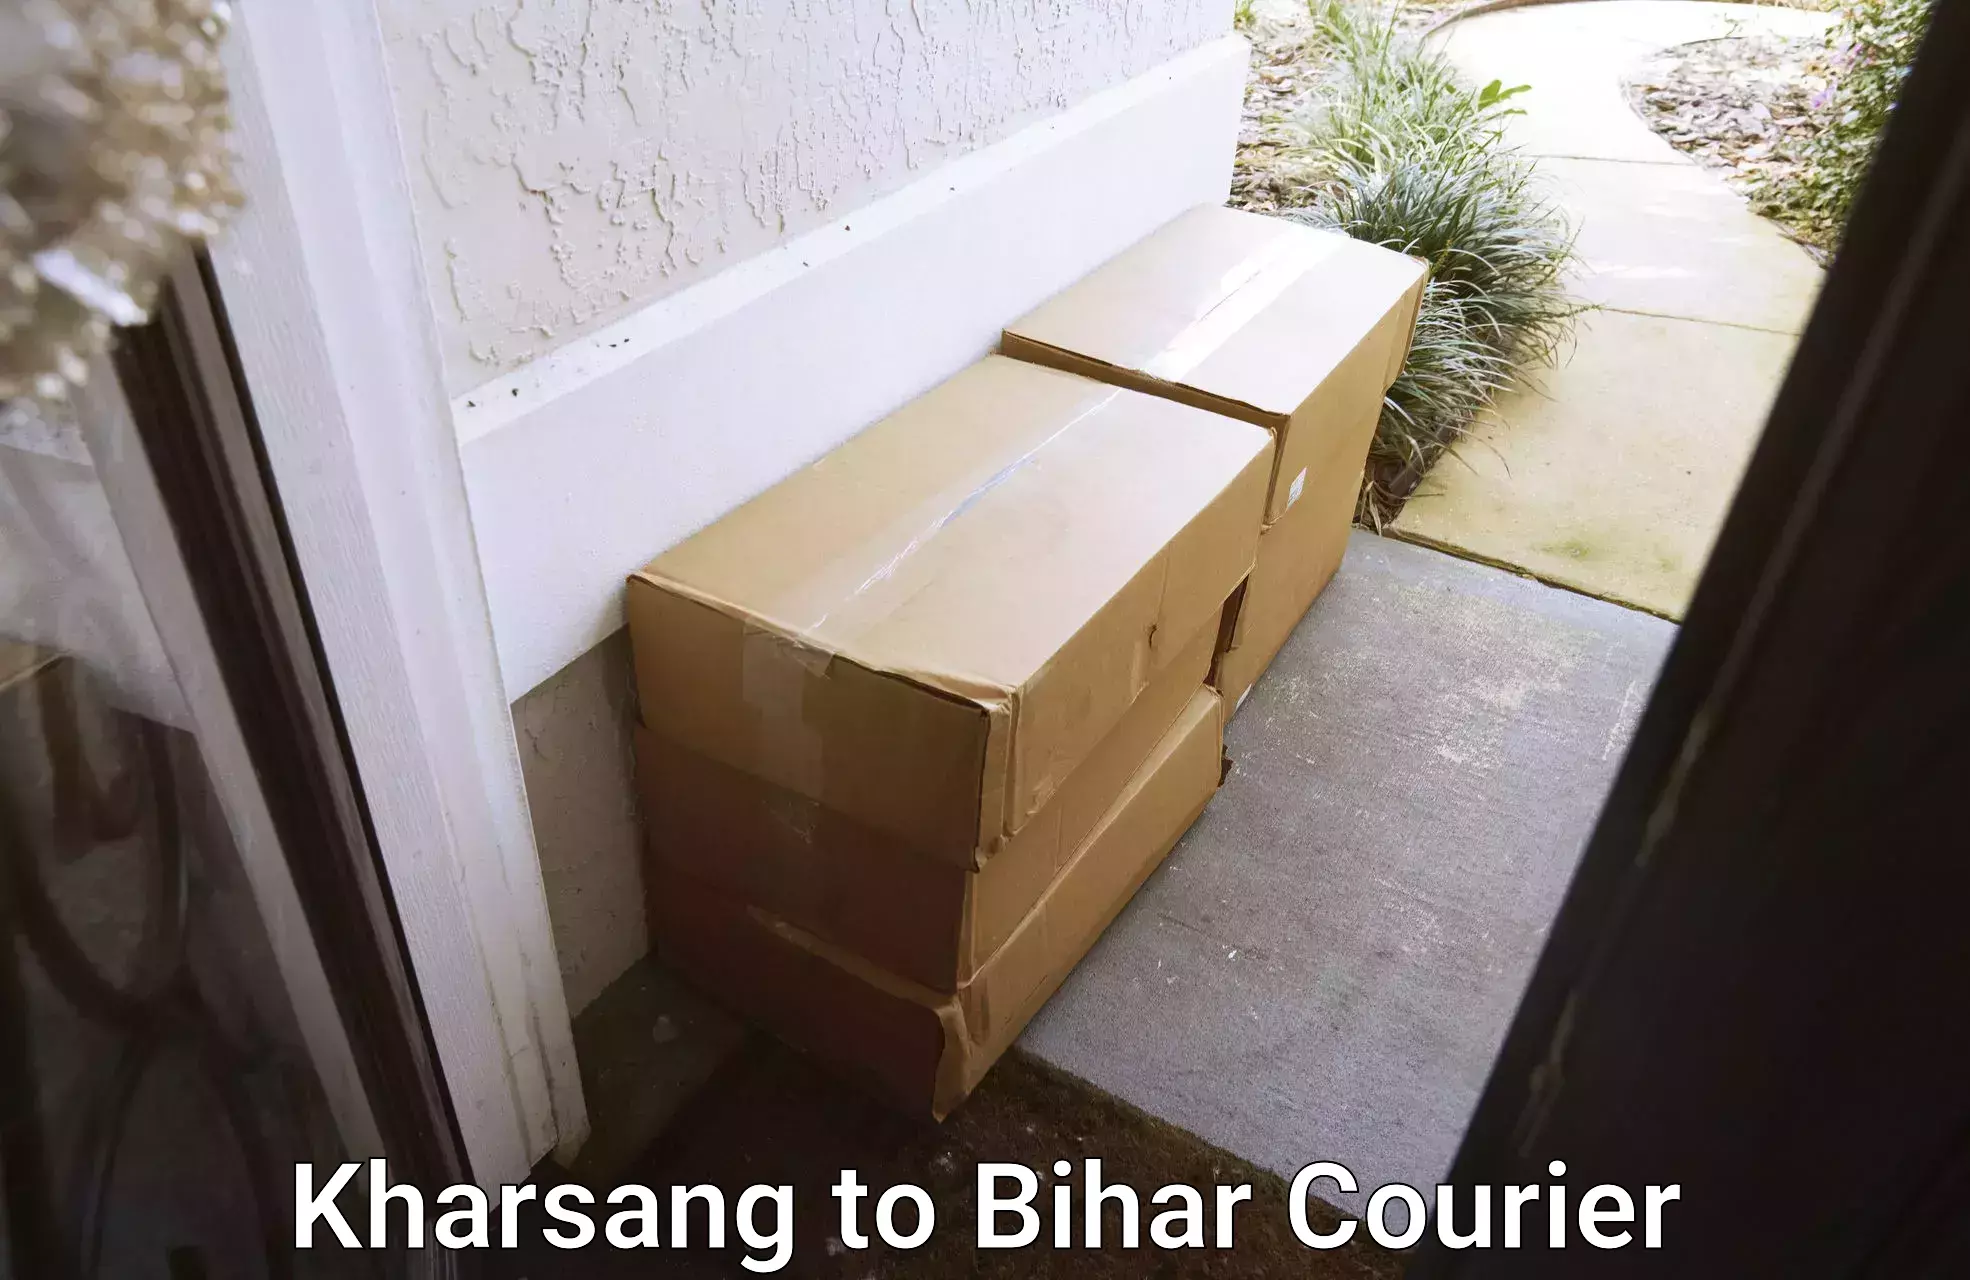 Speedy delivery service Kharsang to Maranga